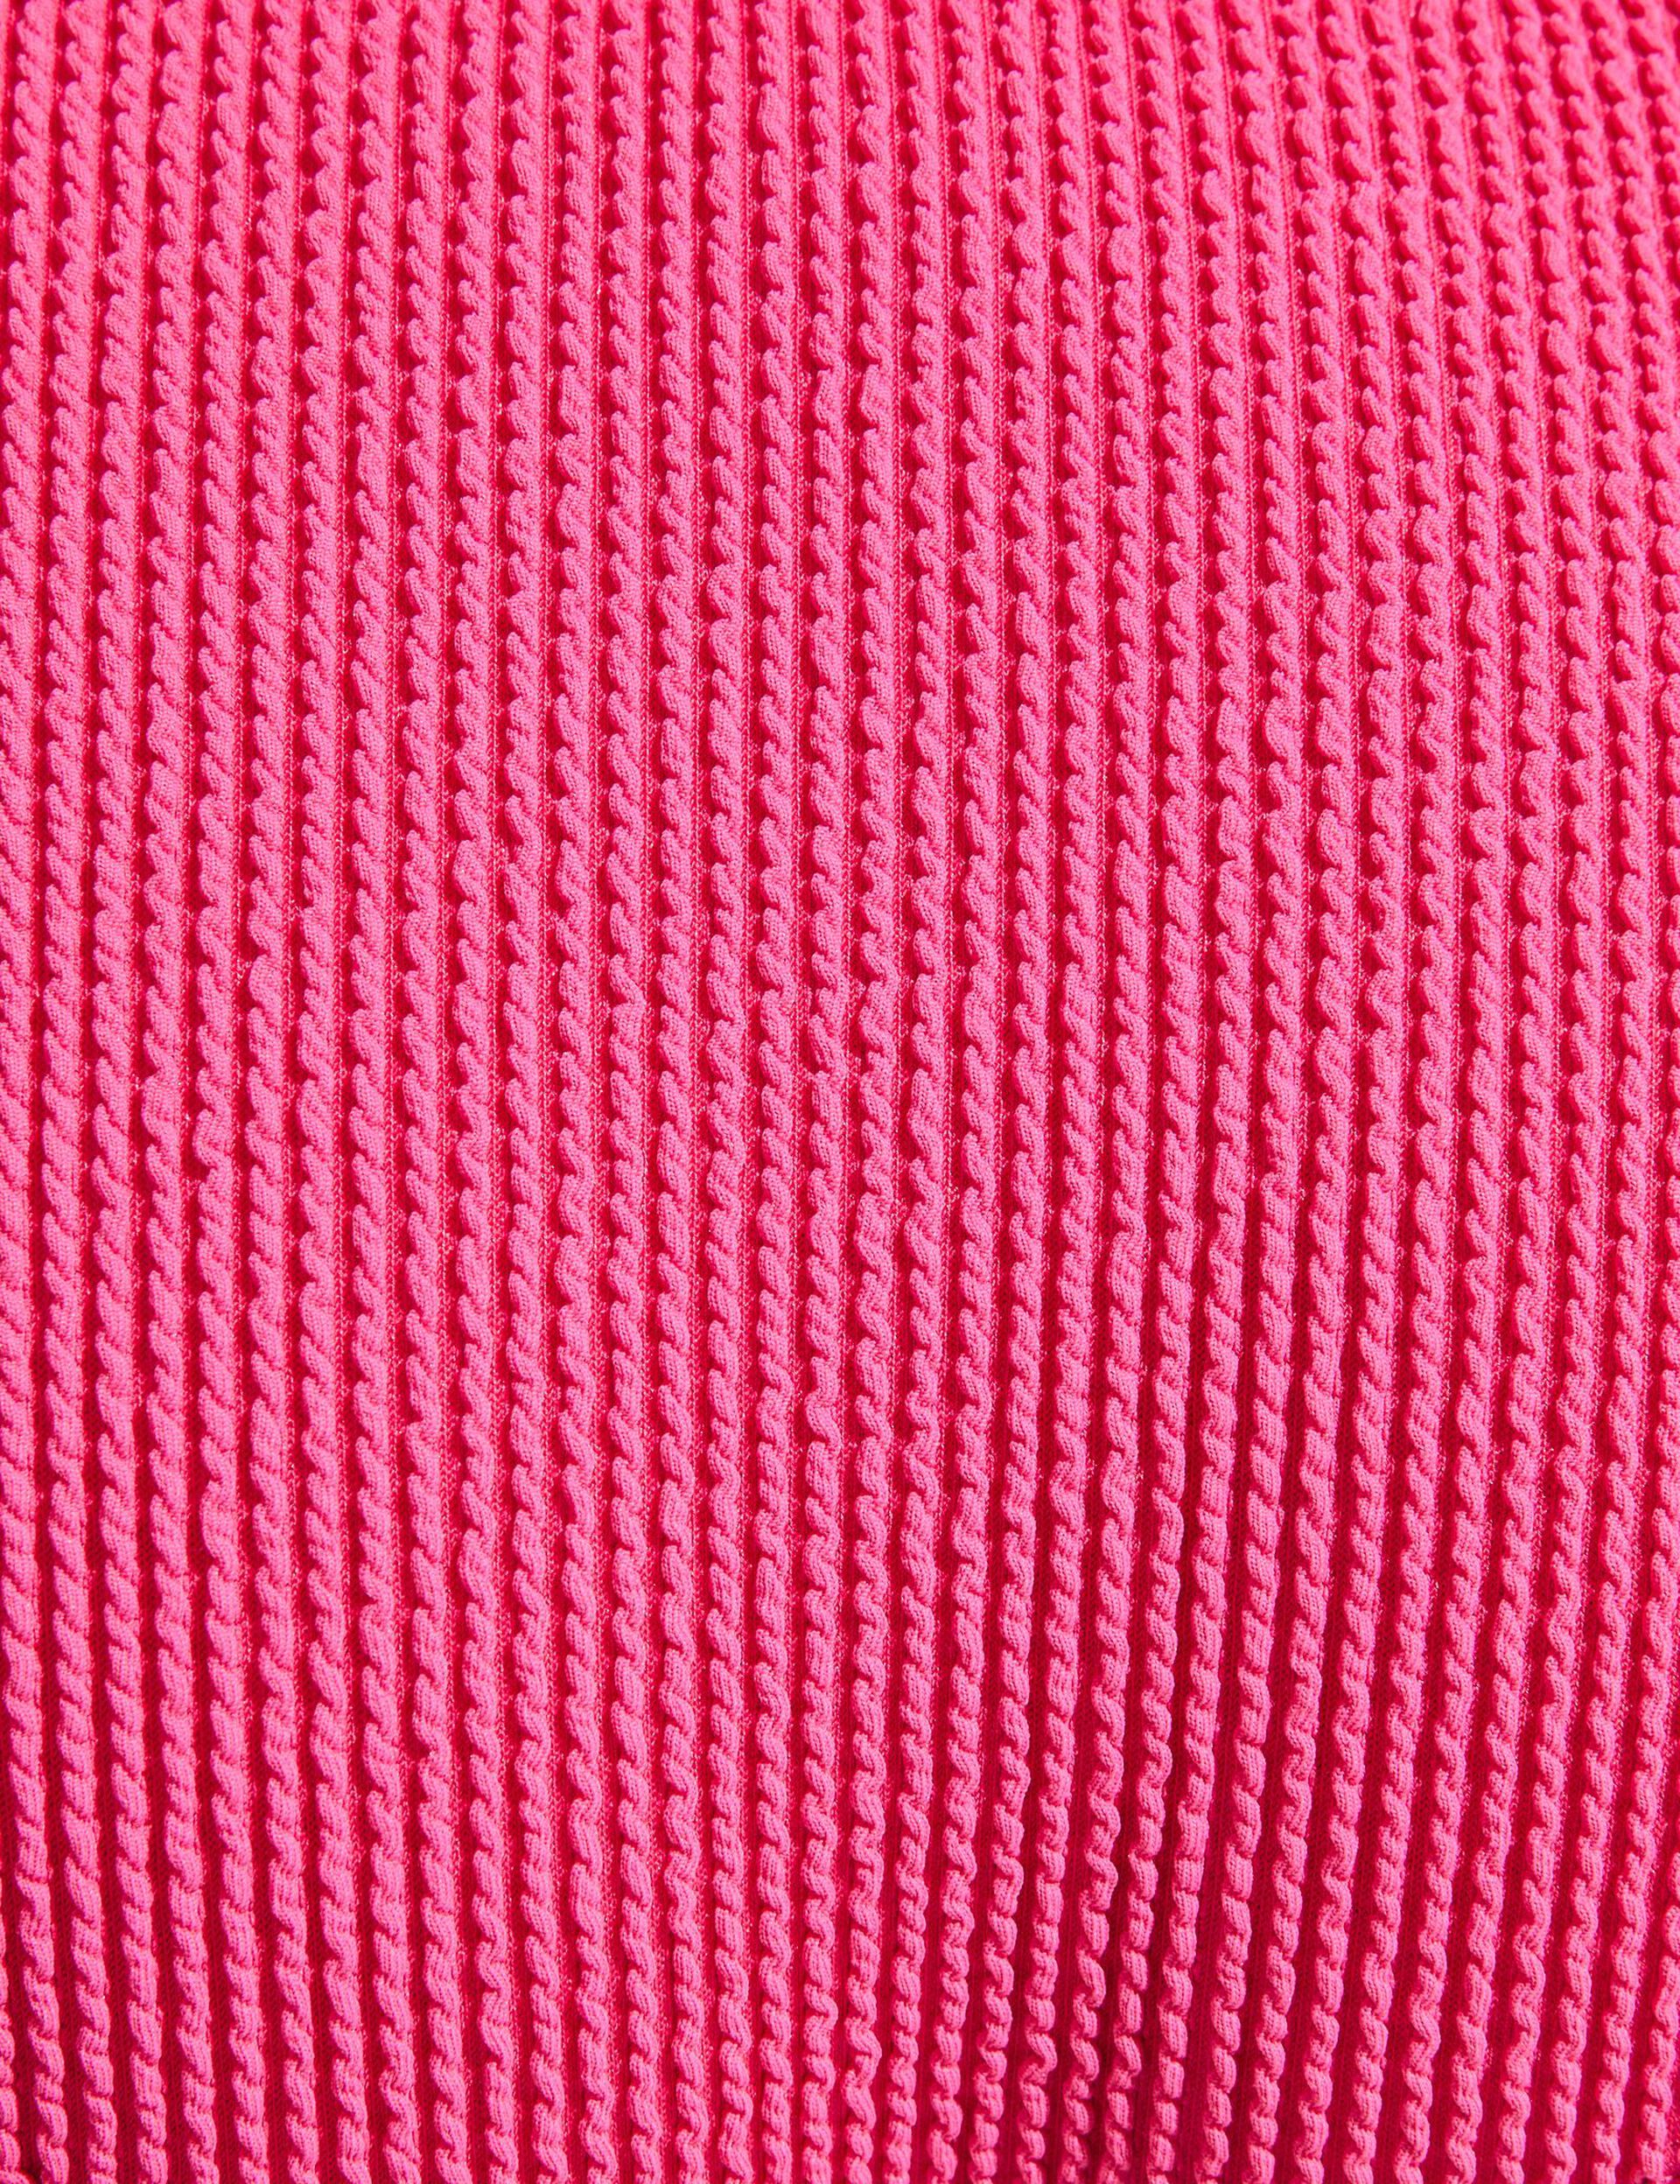 Bas de maillot de bain rose texturé